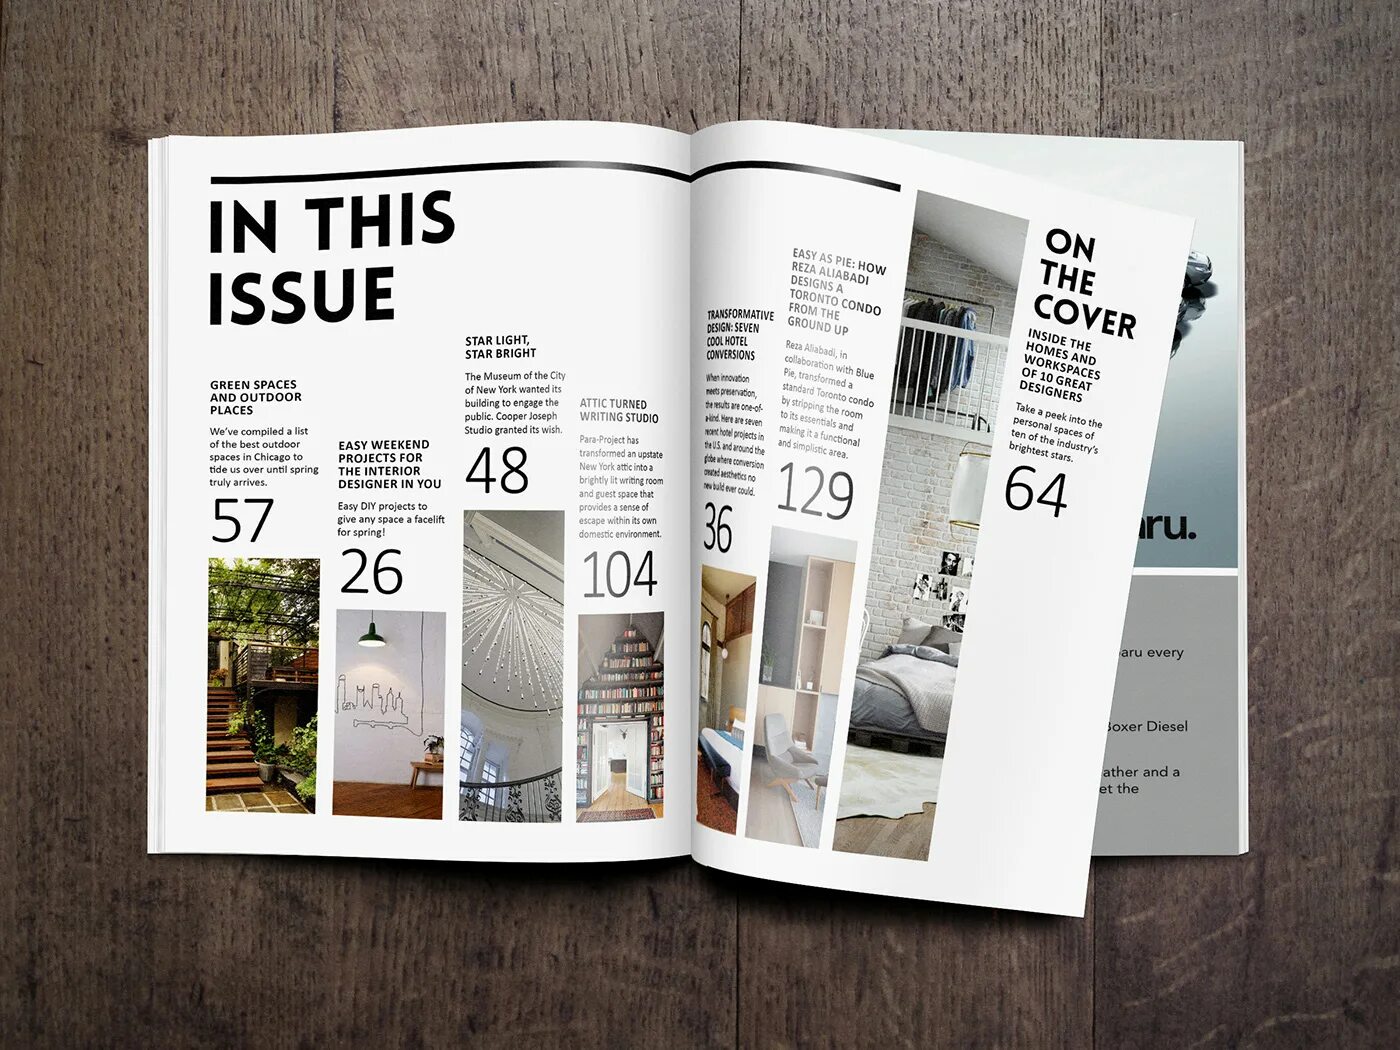 Содержание журнала дизайн. Журнальная верстка. Макет журнала. Креативная верстка журнала. Content layout